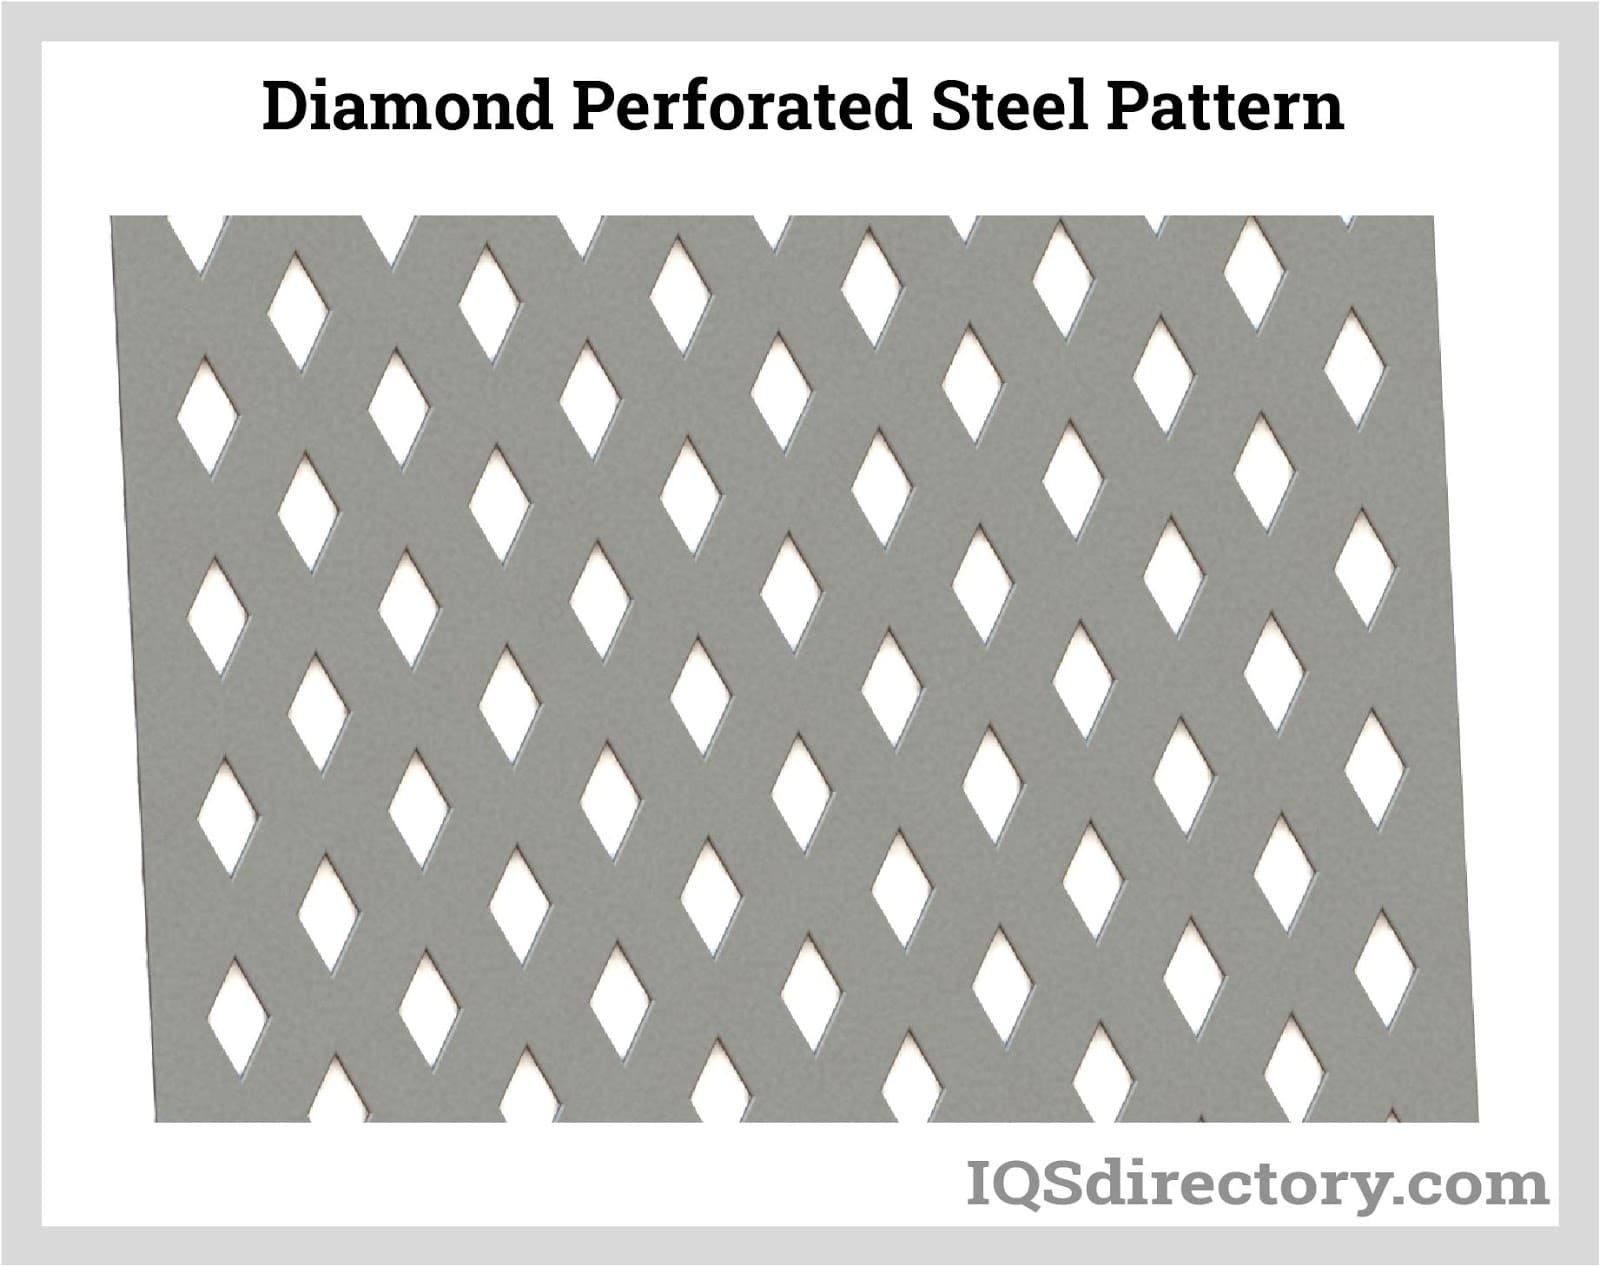 Diamond Perforated Steel Pattern